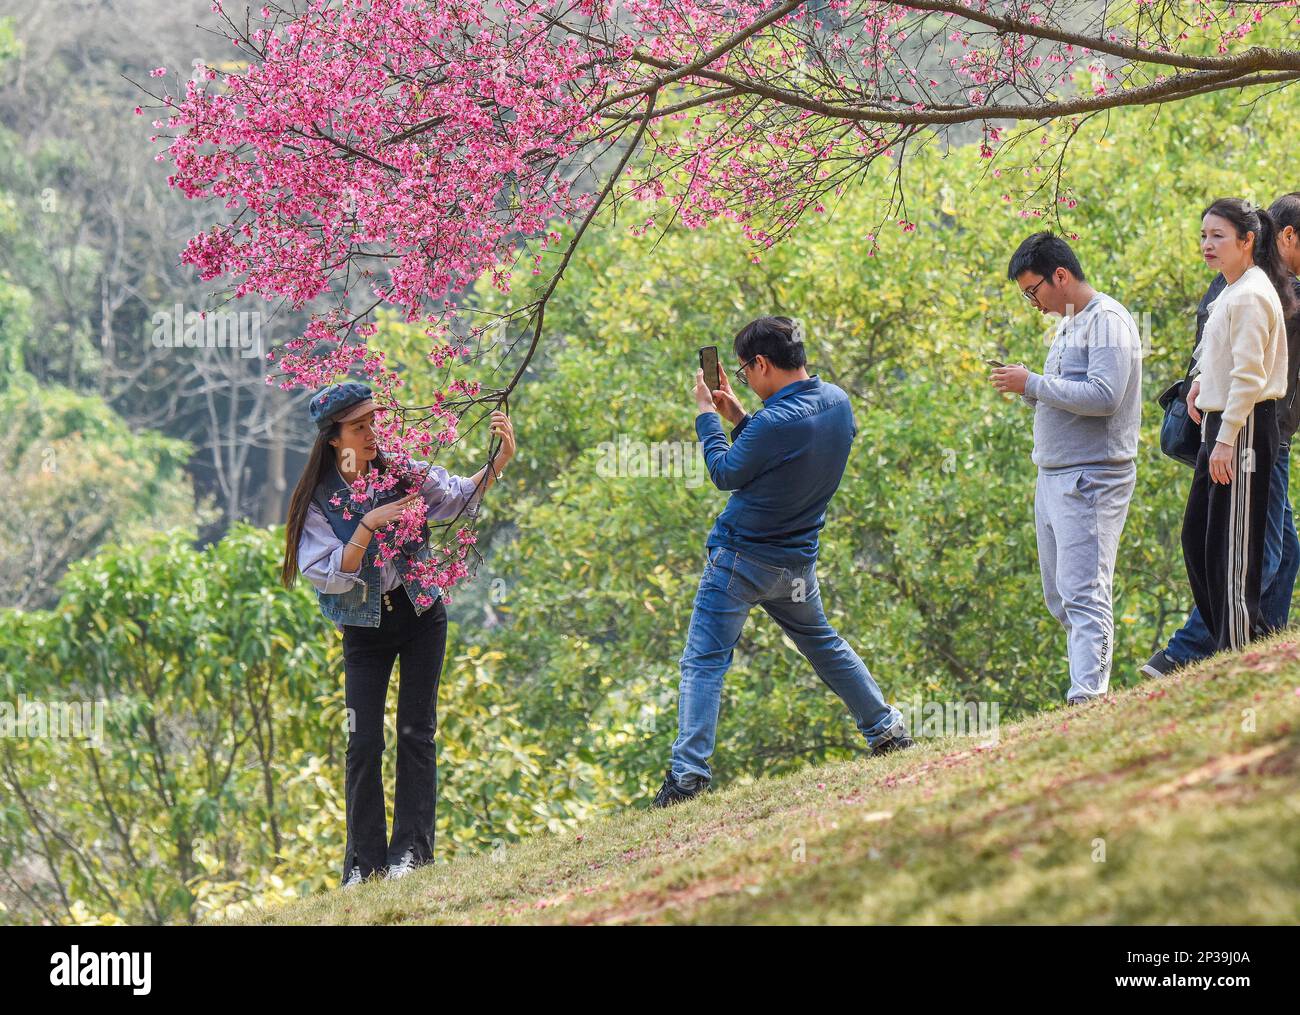 NANNING, CHINA - 4. MÄRZ 2023 - Touristen spielen im Shimen Park in Nanning, Südchina Autonomer Region Guangxi Zhuang, im März unter Kirschblüten Stockfoto